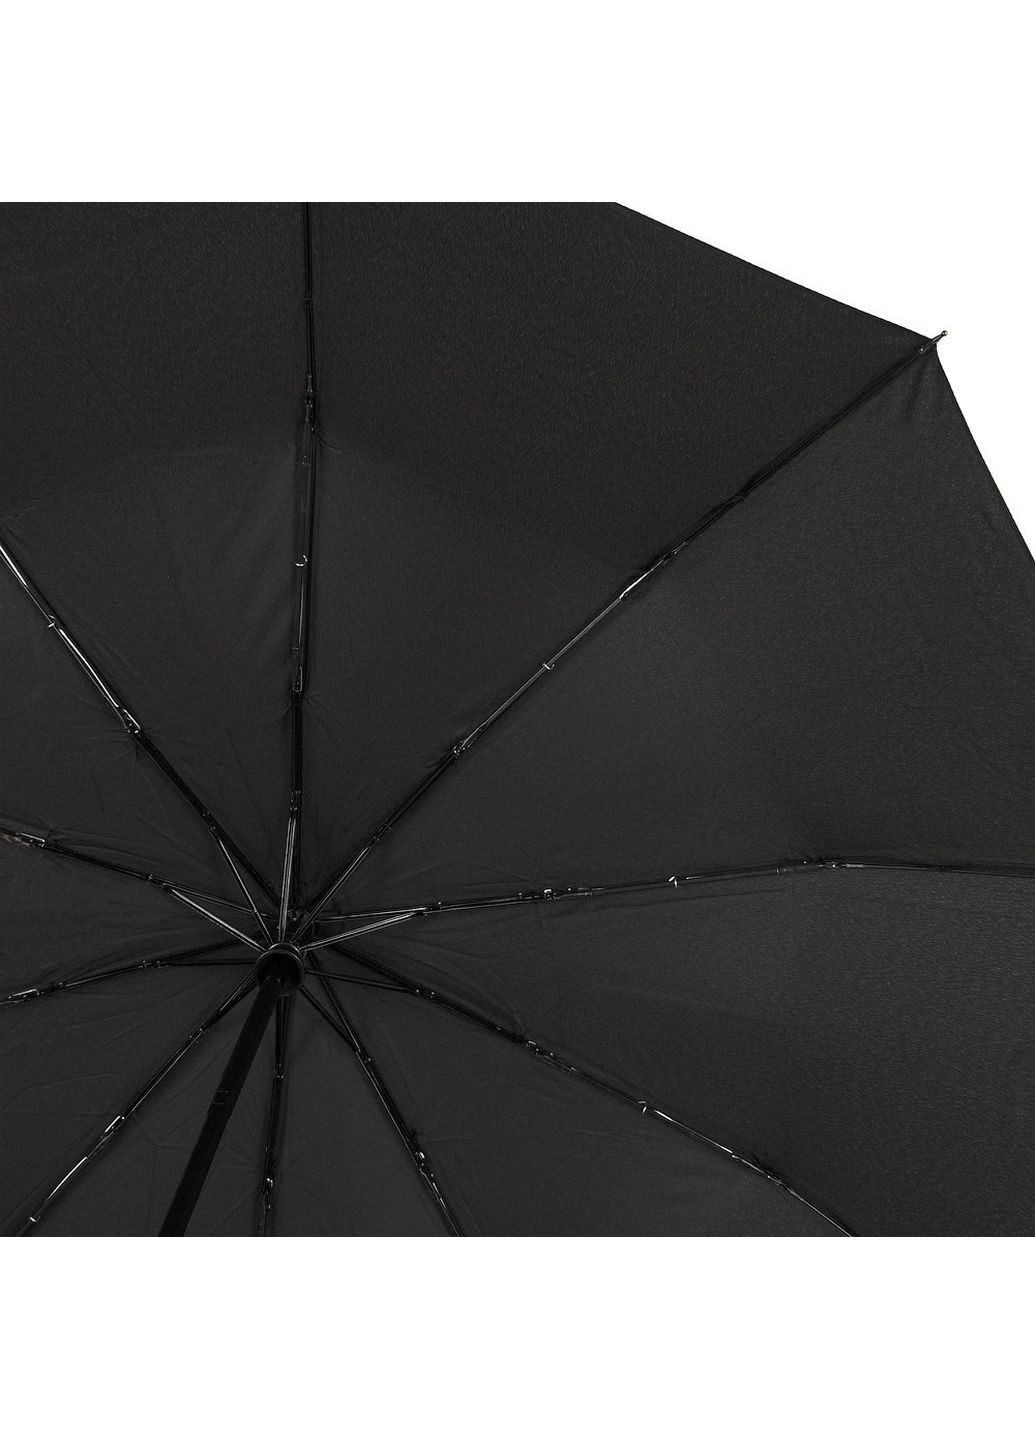 Мужской складной зонт полуавтомат Zest (282593222)